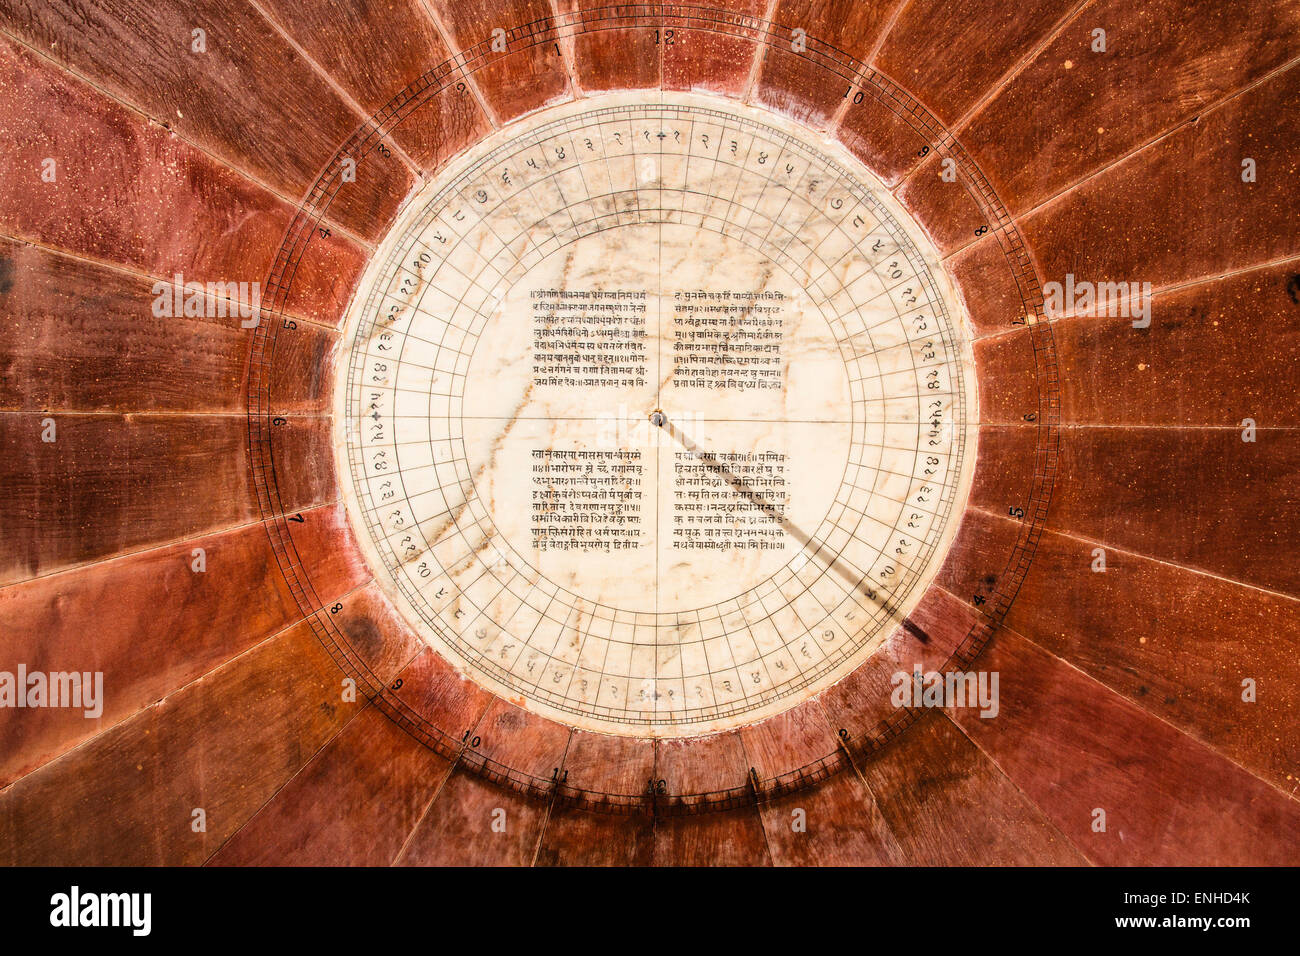 Nadivalaya, cadran solaire de l'observatoire Jantar Mantar, Jaipur, Rajasthan, Inde Banque D'Images